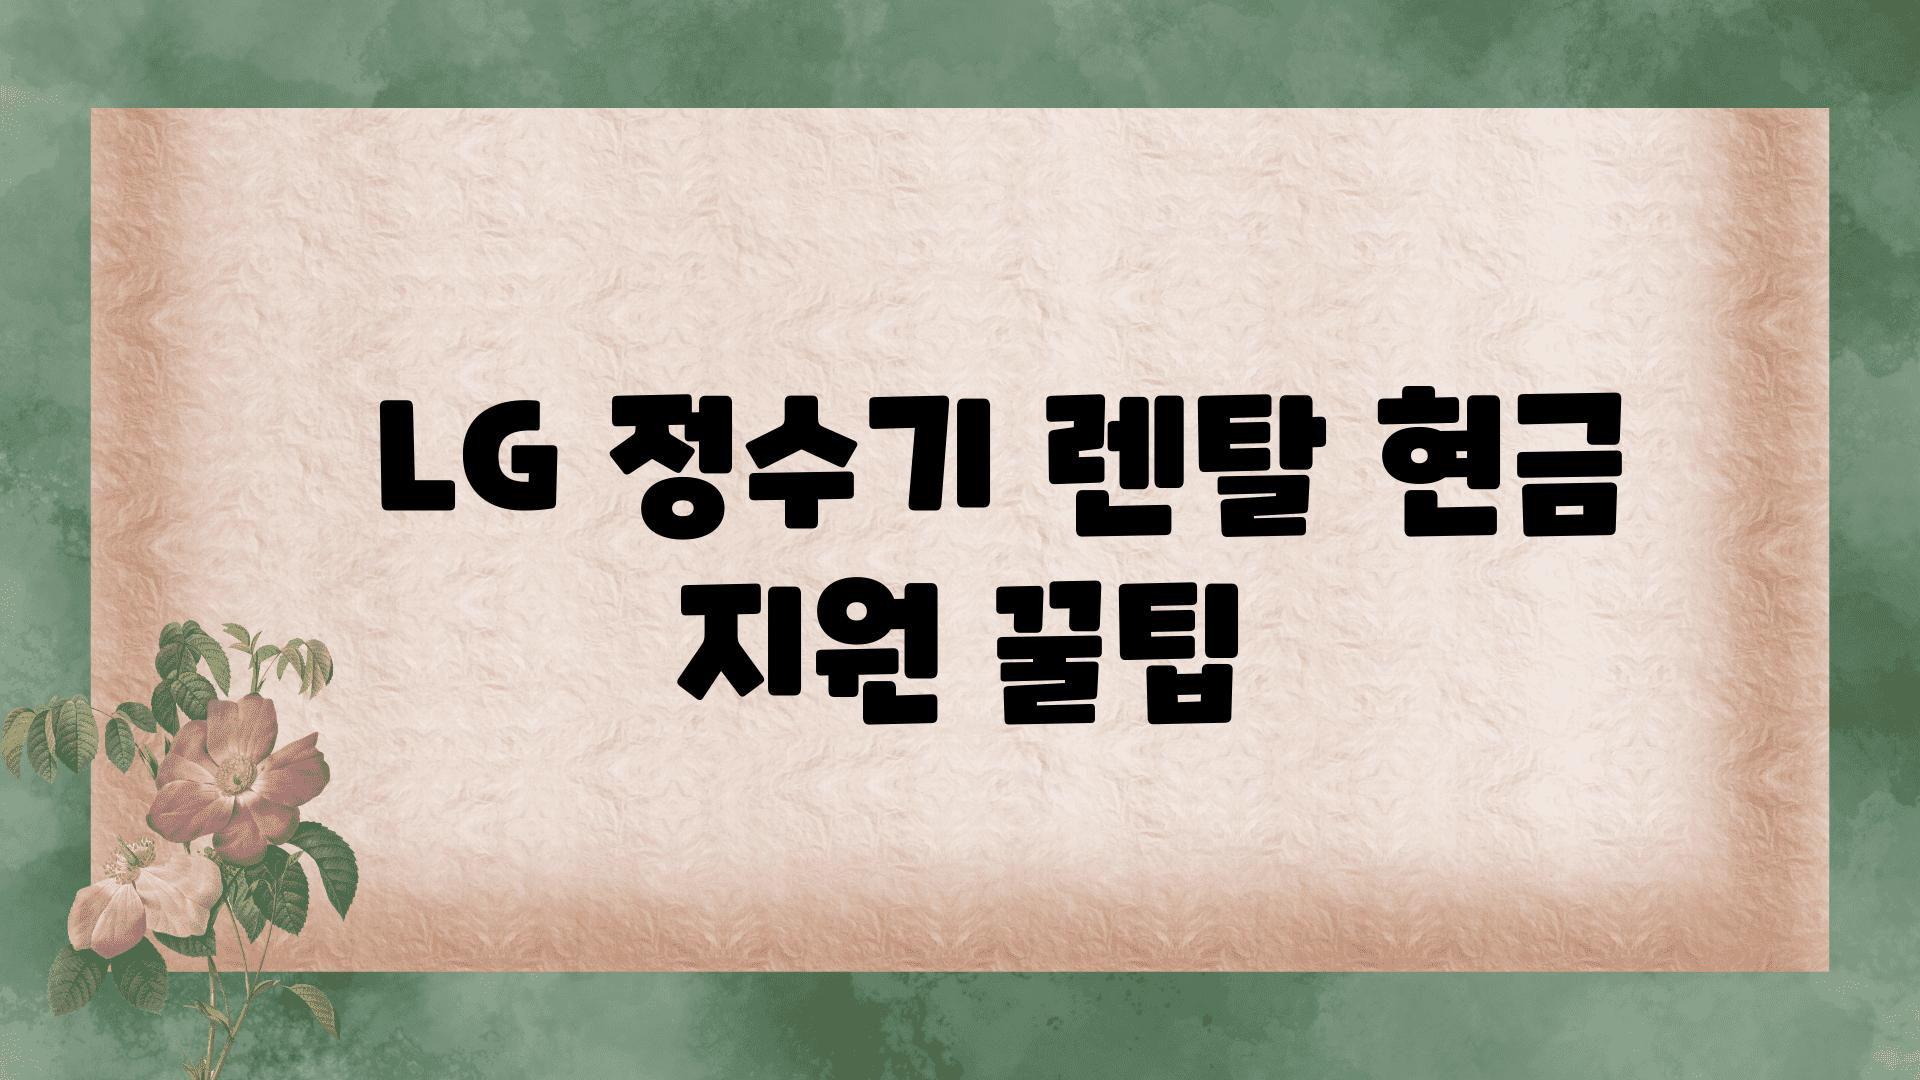   LG 정수기 렌탈 현금 지원 꿀팁